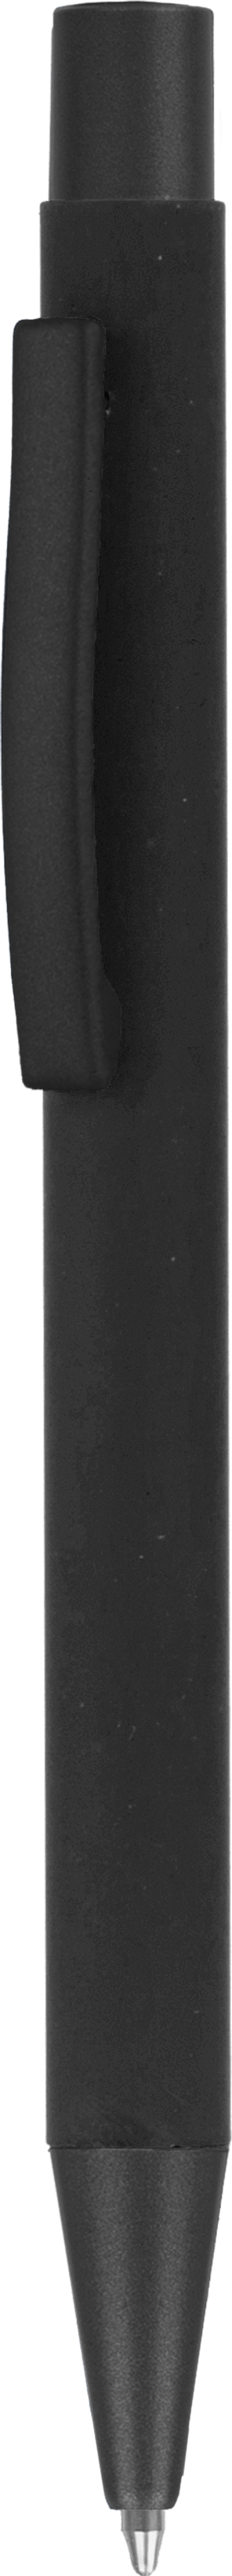 Ручка MAX SOFT TITAN Черная полностью 1110.88